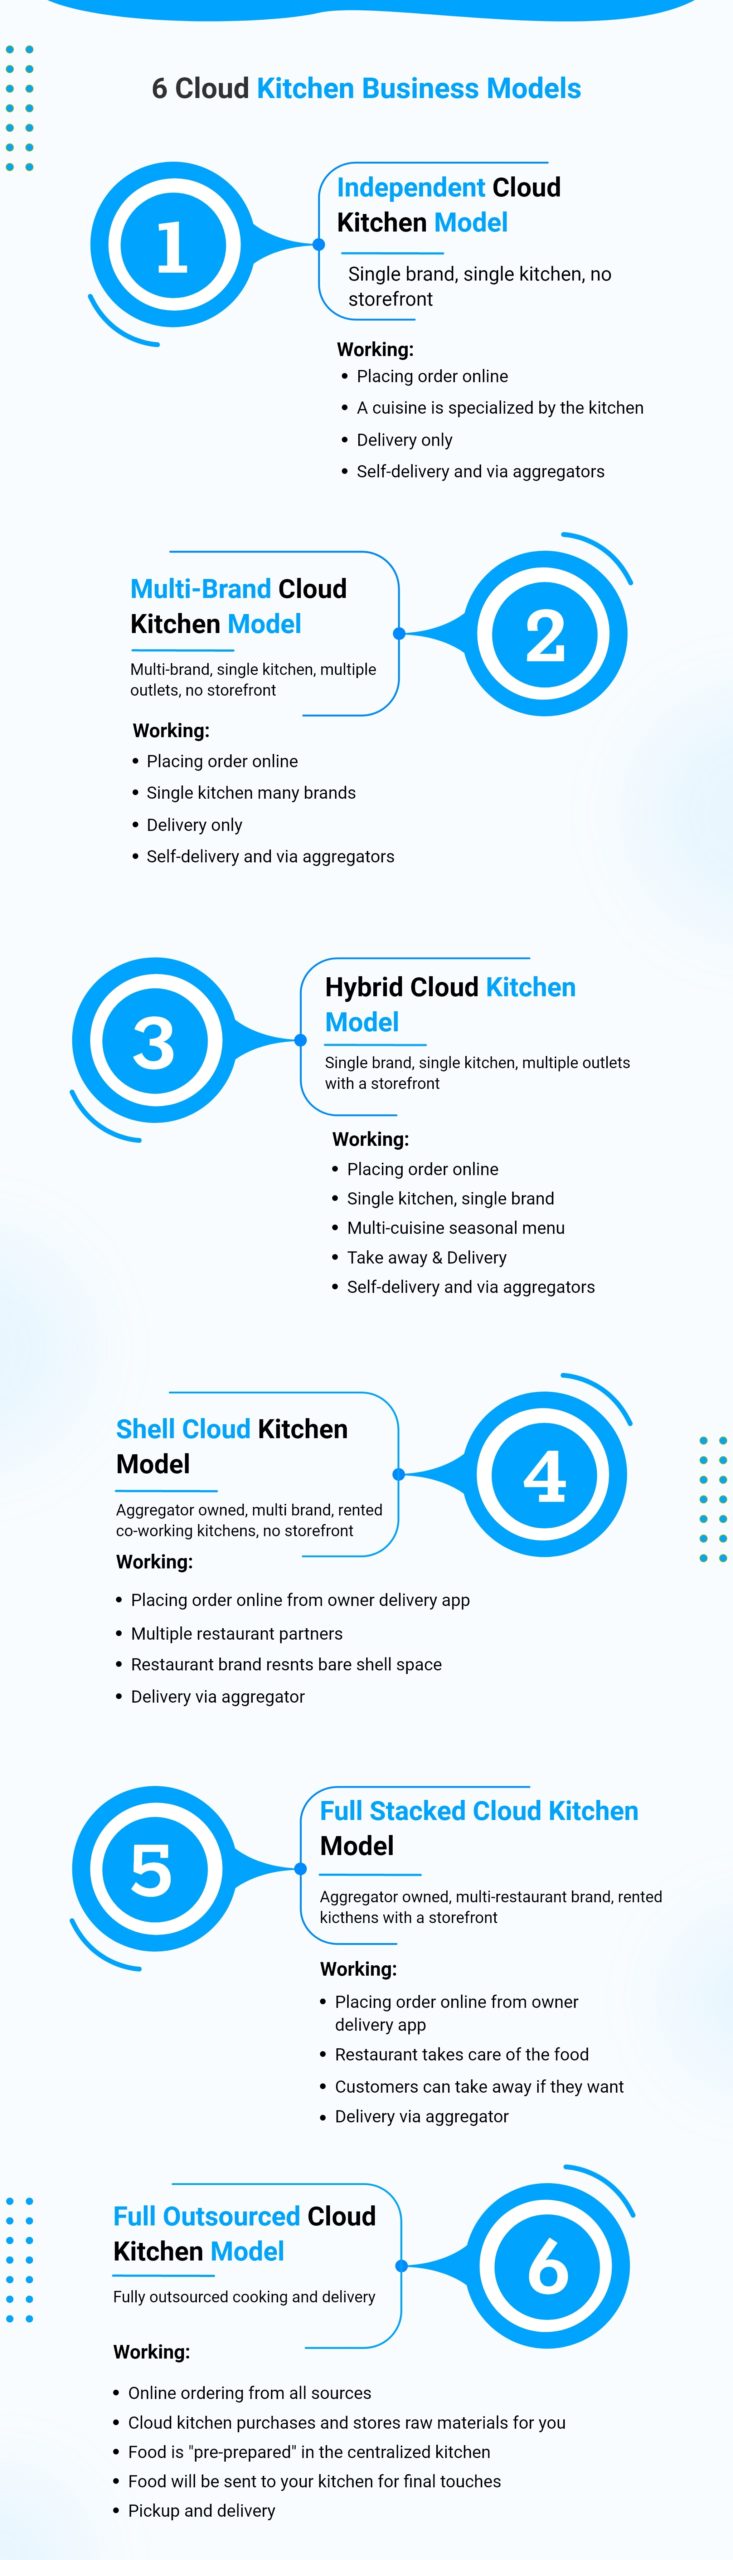 6 cloud kitchen business models